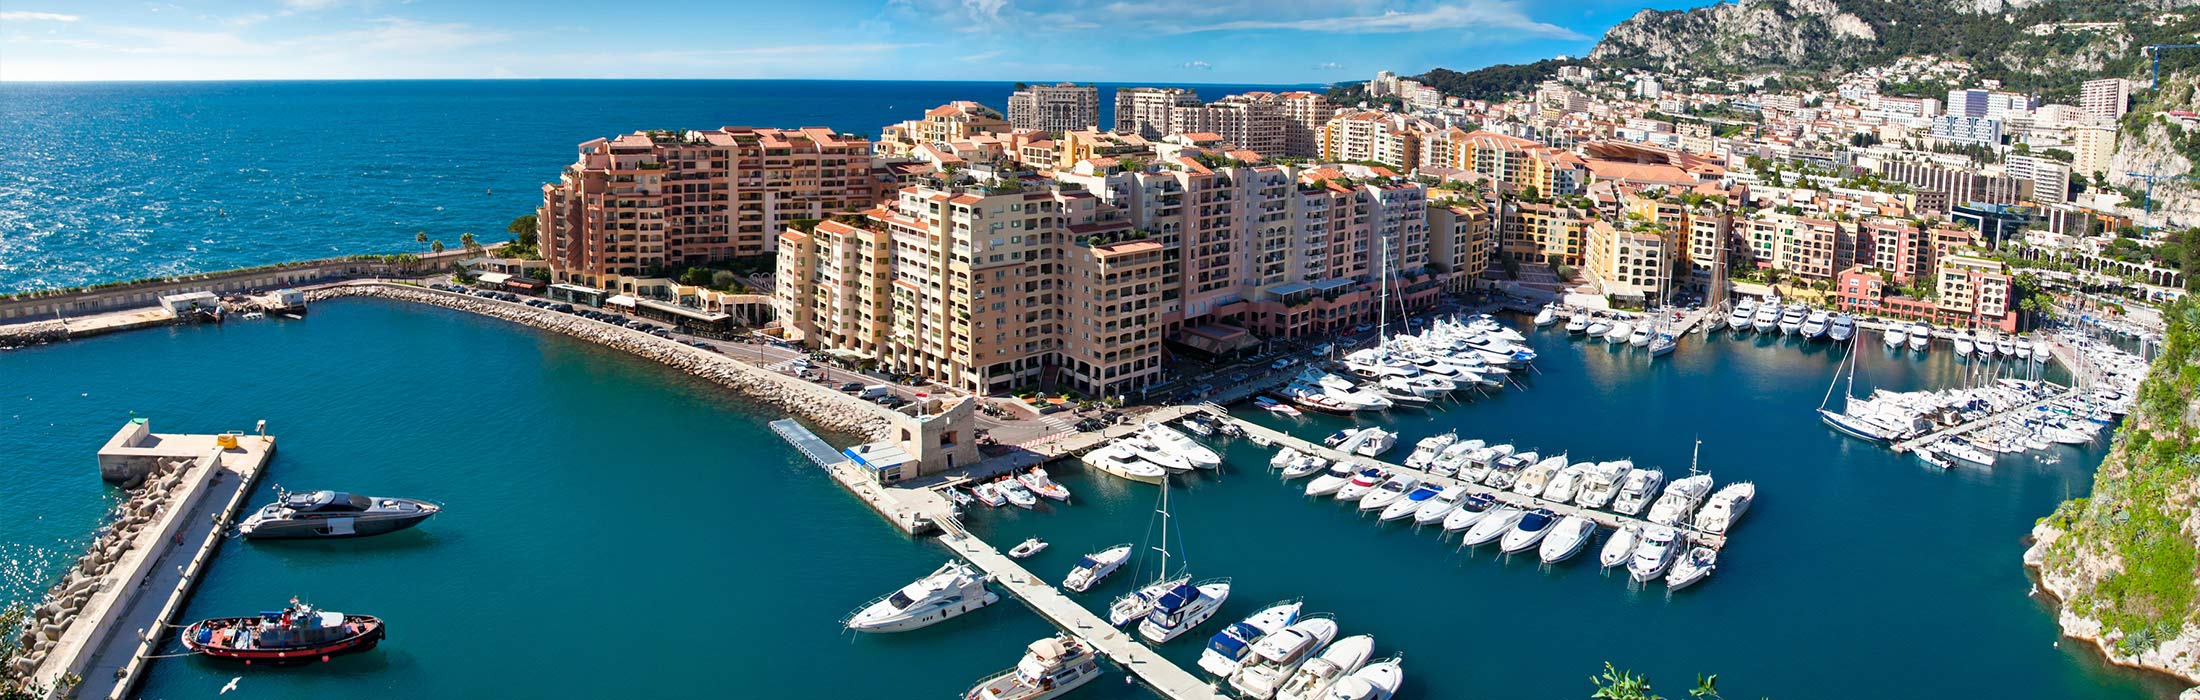 top-yacht-charter-destinations-weatern-mediterranean-french-riviera-monte-carlo.jpg